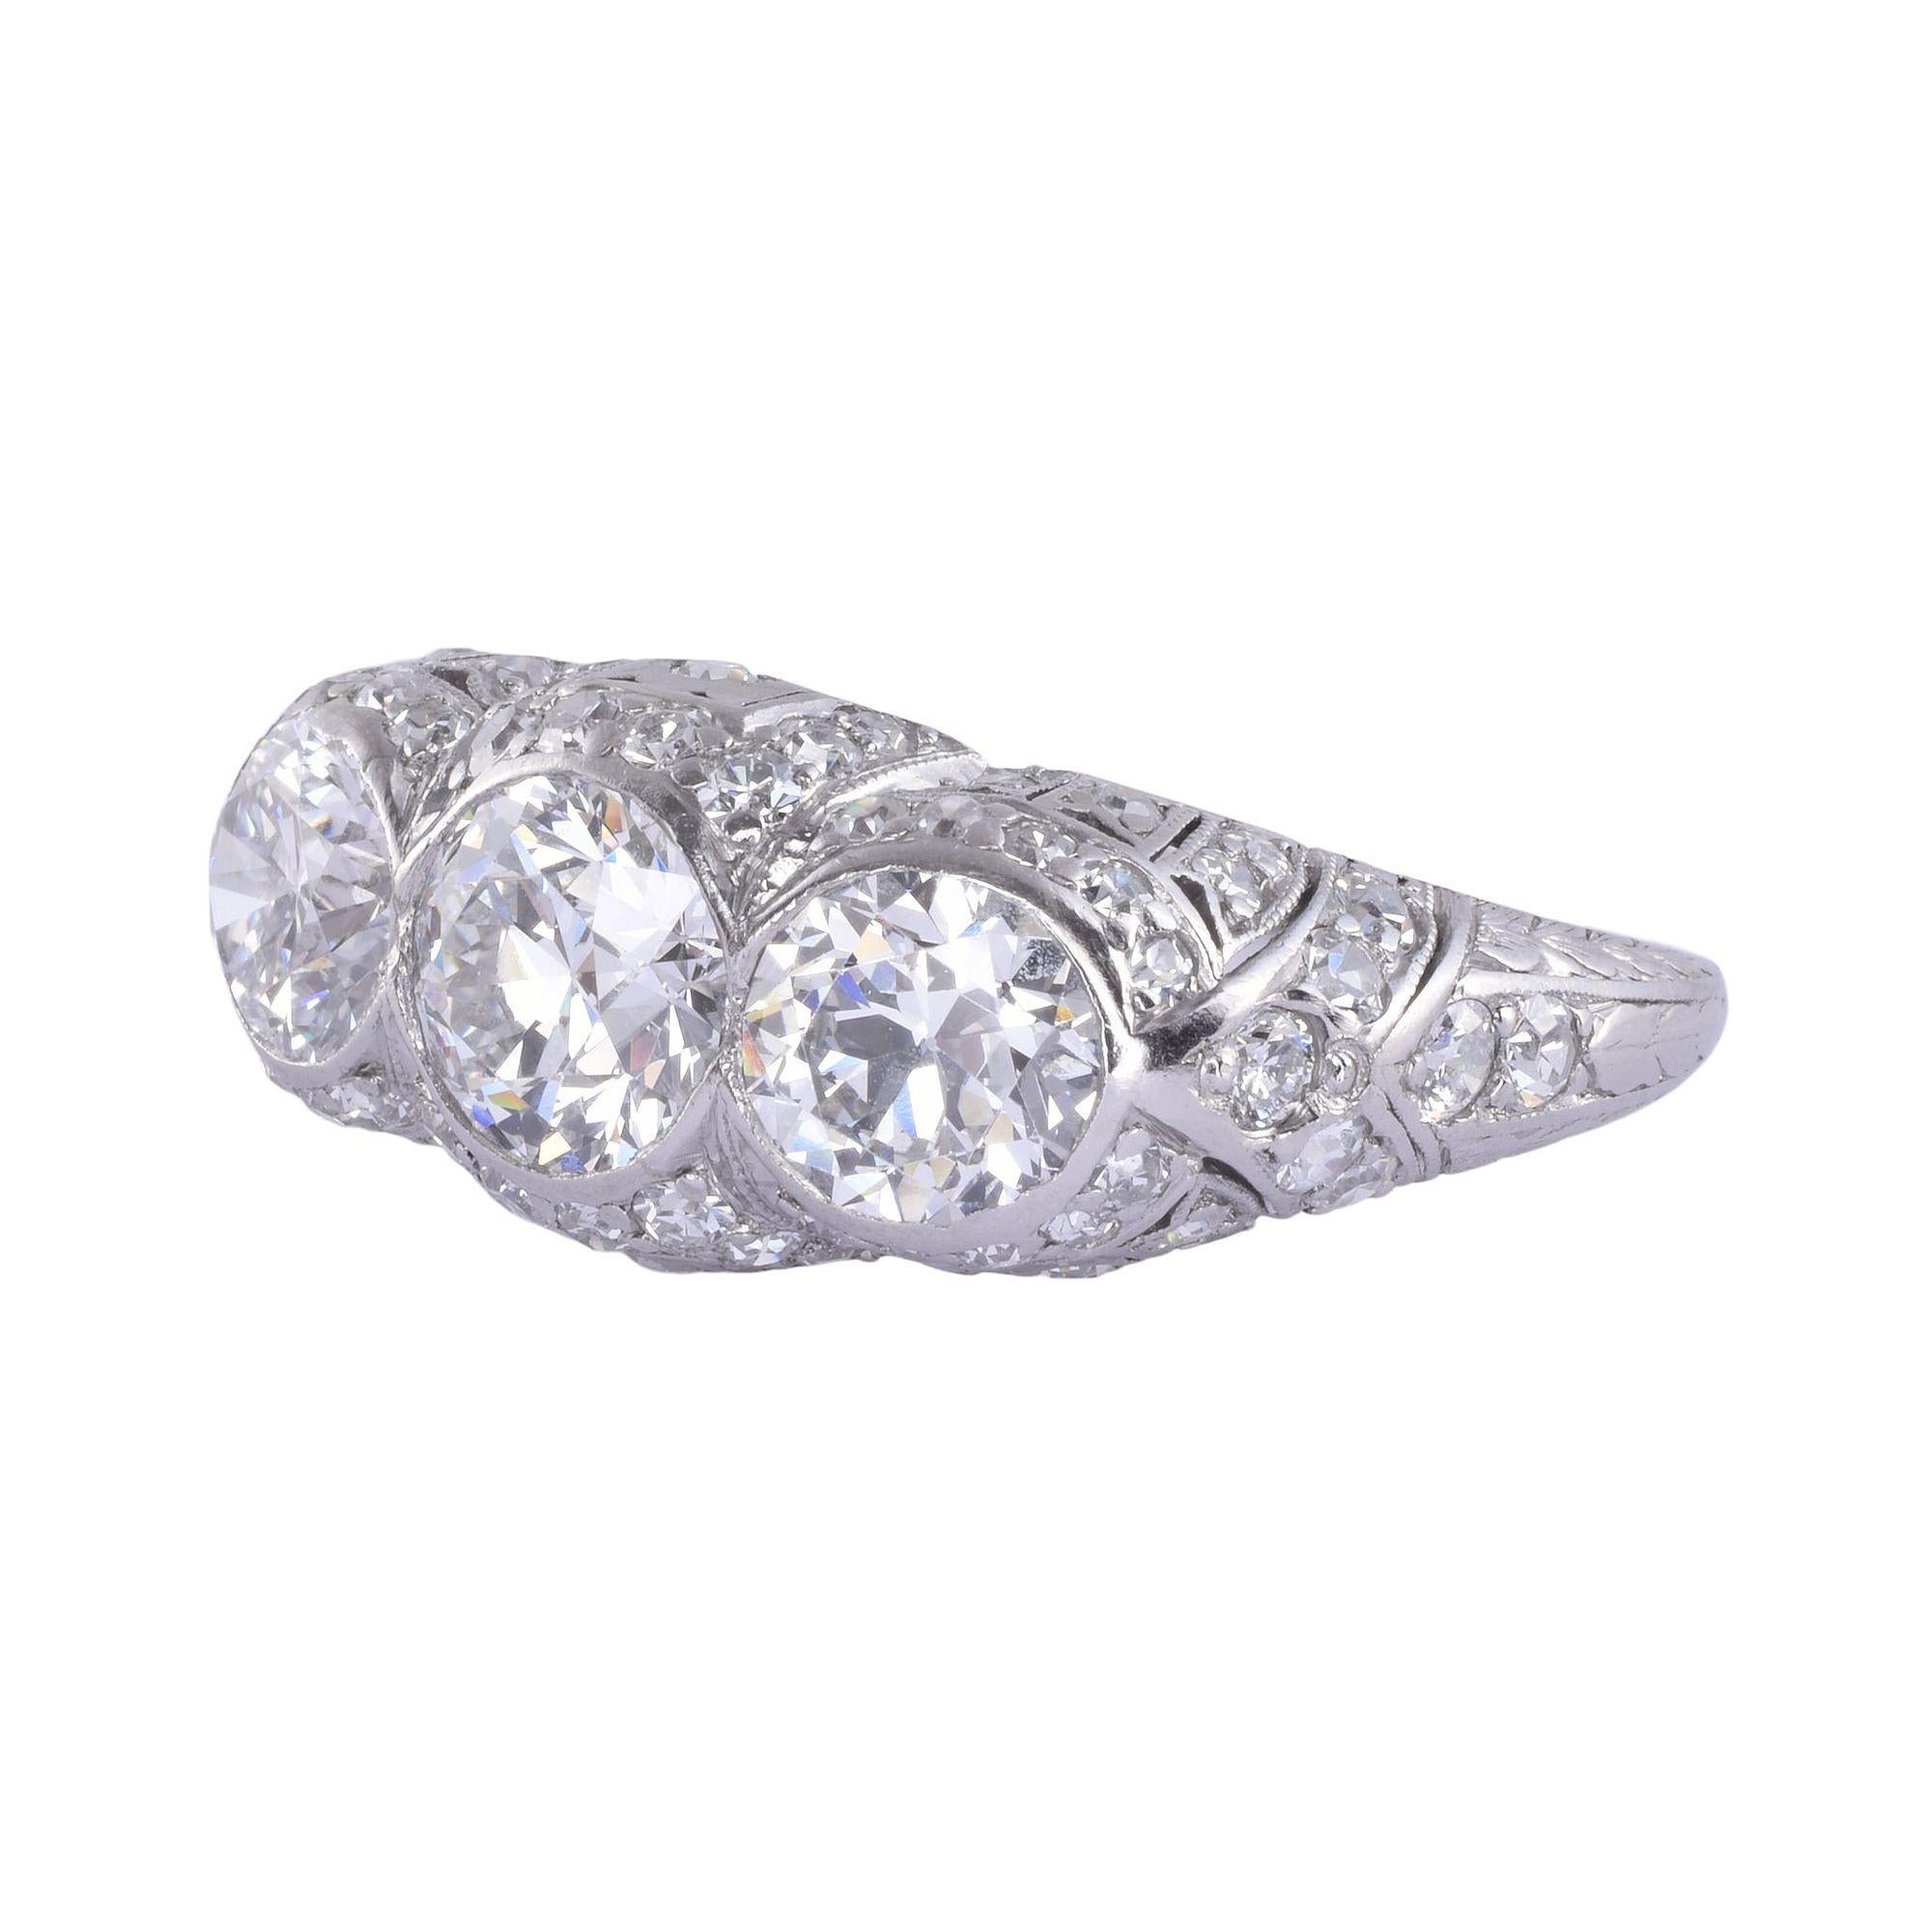 Vintage Art Deco Ring aus Platin mit drei Diamanten in der Mitte, um 1930. Dieser Art-Déco-Ring aus Platin verfügt über drei in der Lünette gefasste zentrale Diamanten, darunter ein 0,95 Karat VS1 G, ein 0,66 Karat VS2 H und ein 0,68 Karat VS2 H.